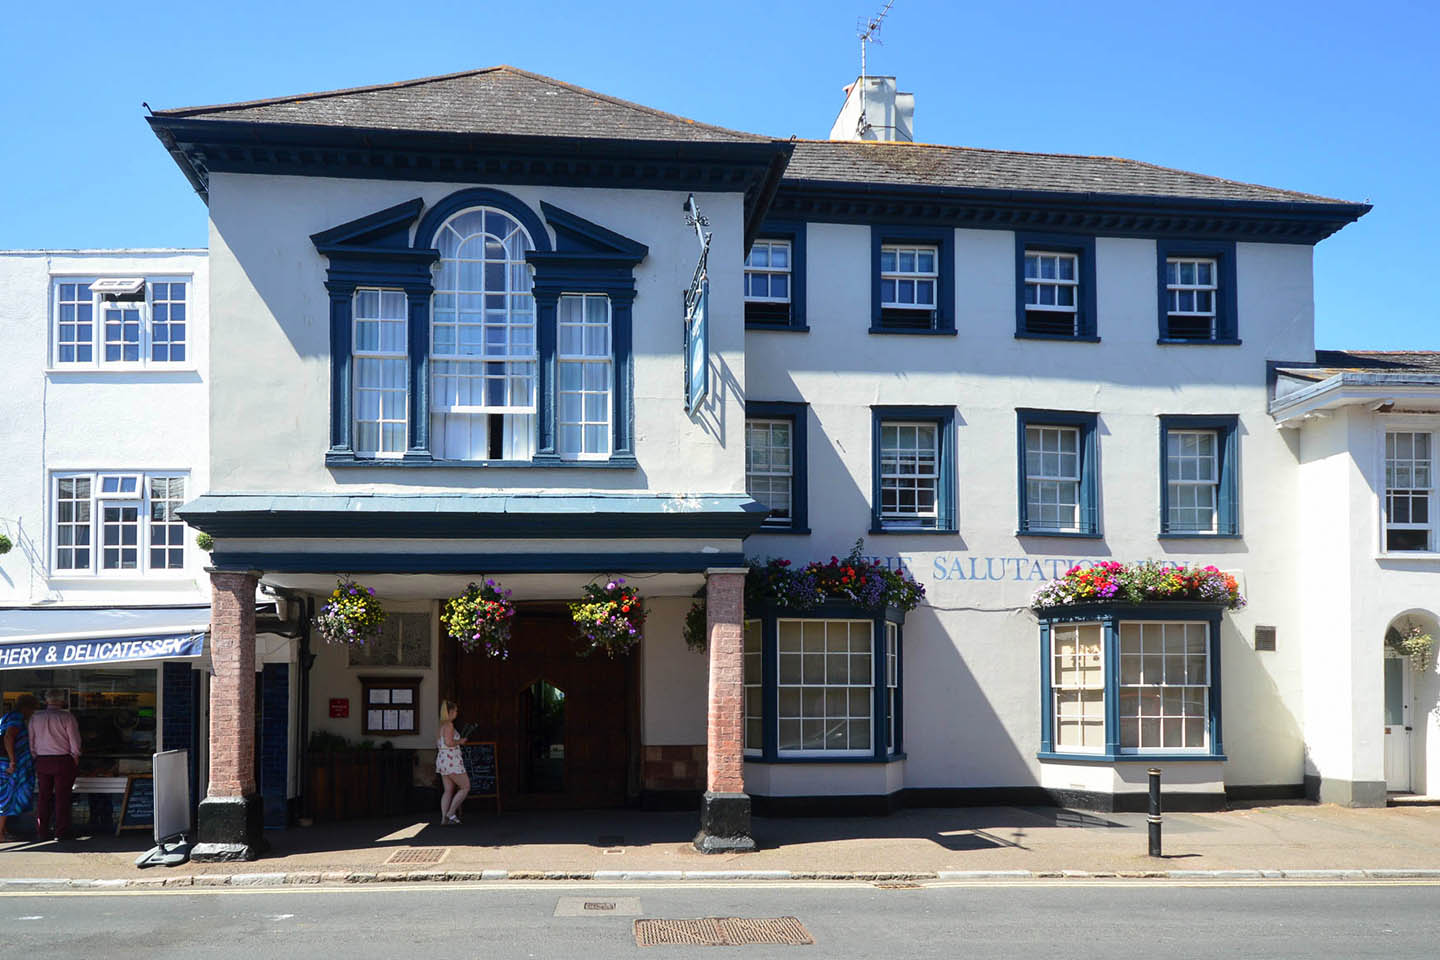 The Salutation Inn, Topsham - Devon Foodie Destination